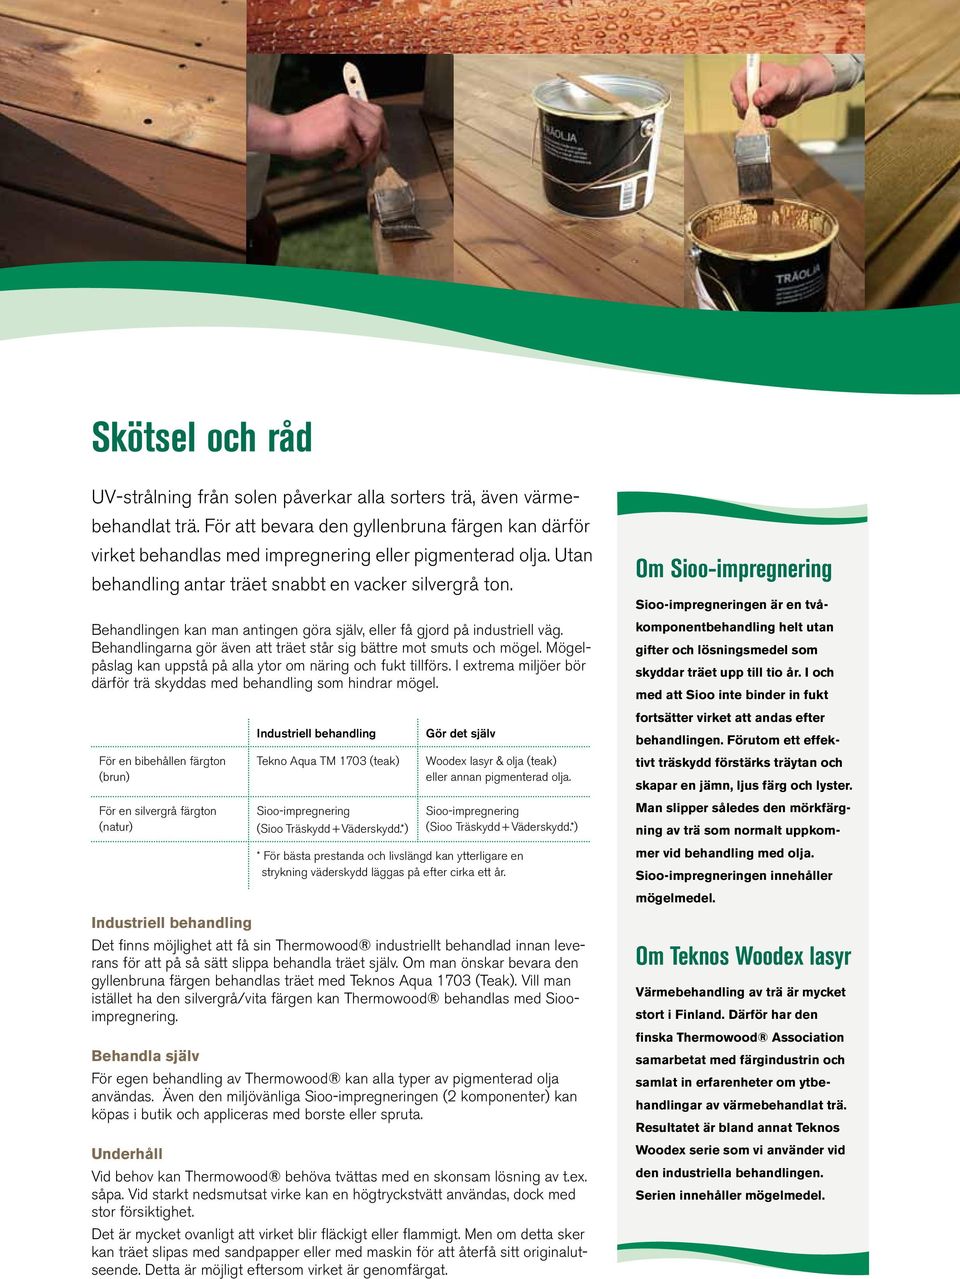 Vad är värmebehandlat trä? - PDF Free Download